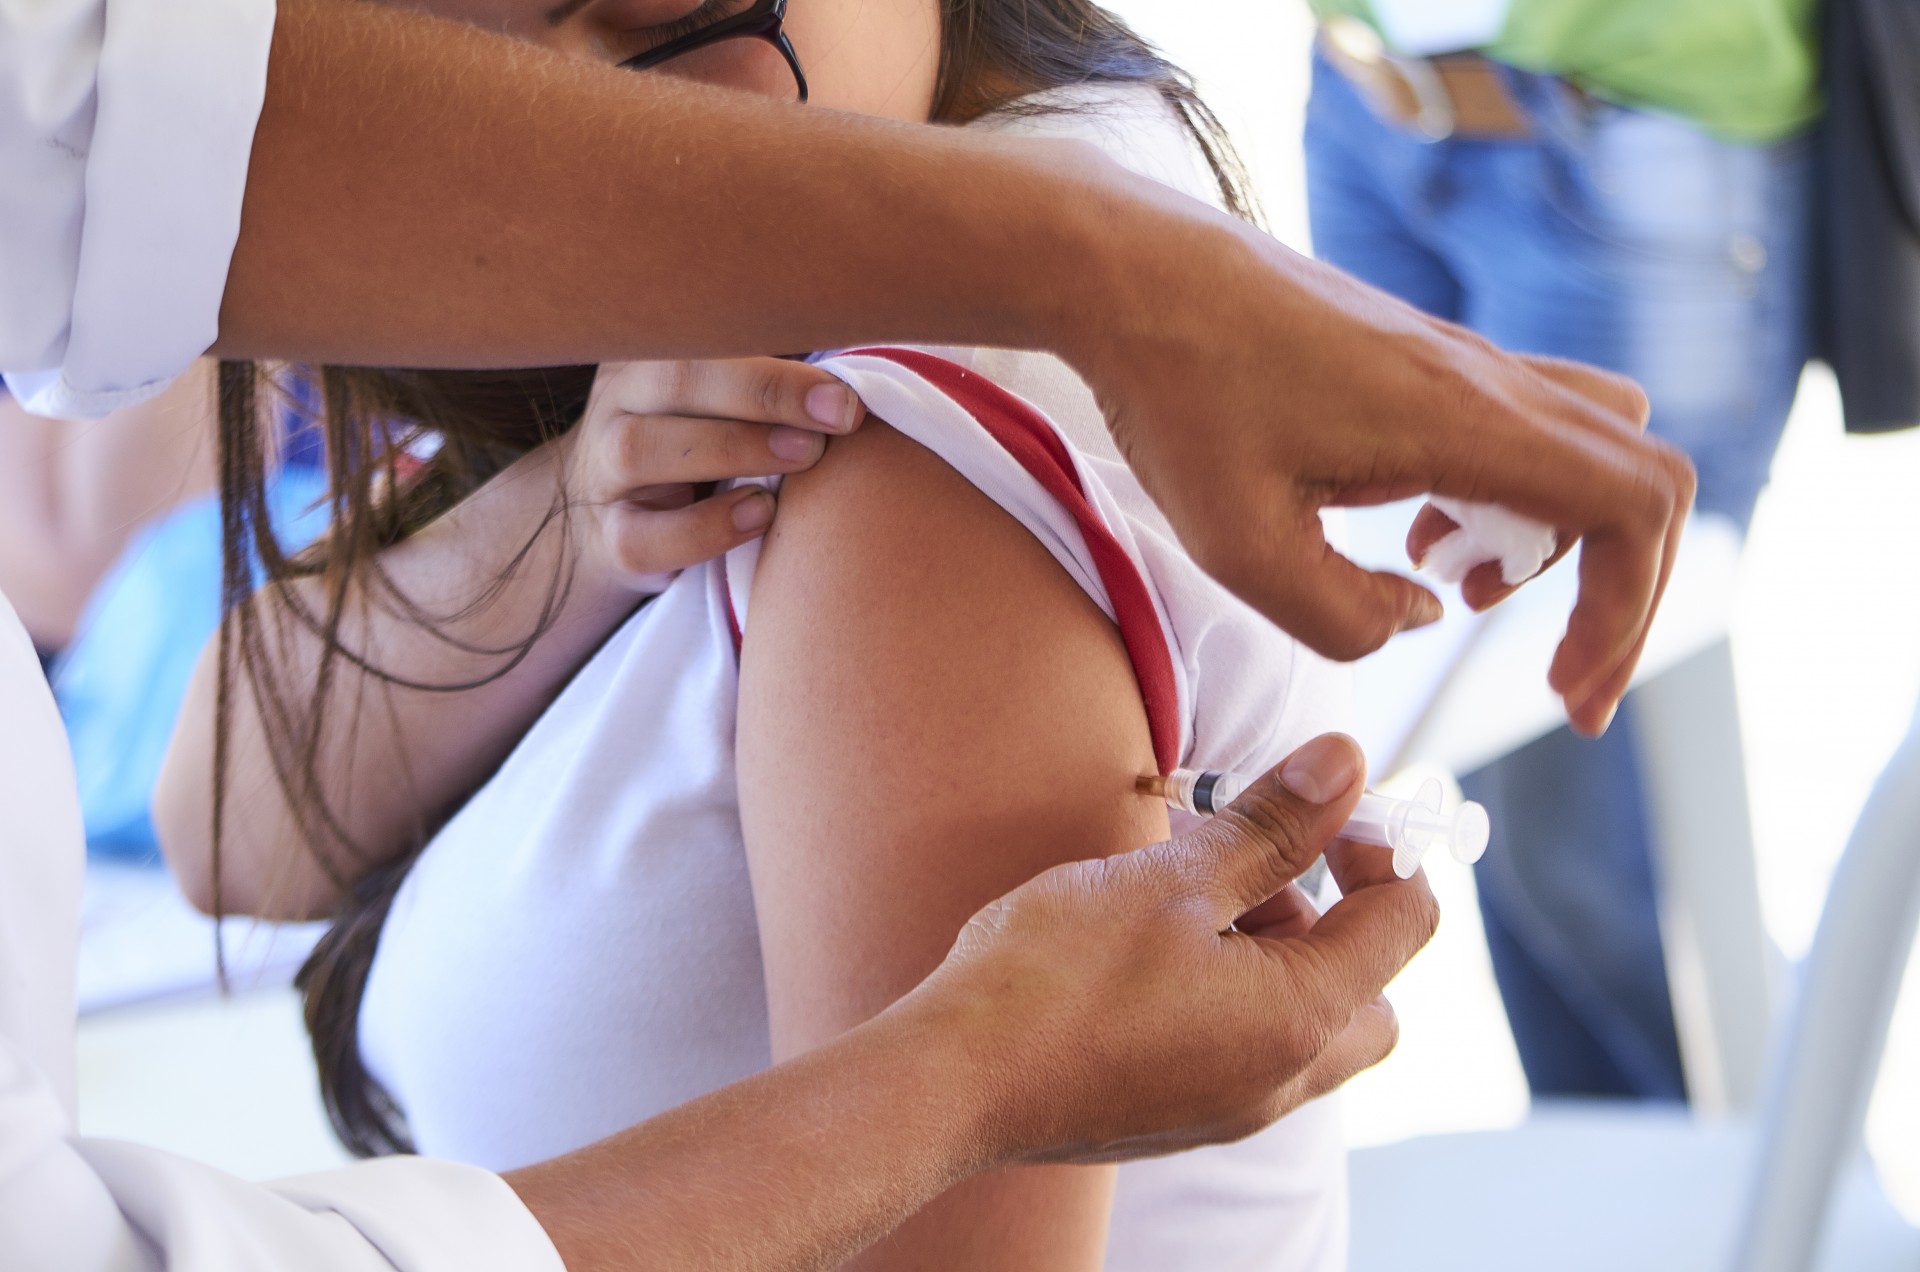 Paraná decide continuar oferta de vacinas da dengue mesmo após alerta da Anvisa